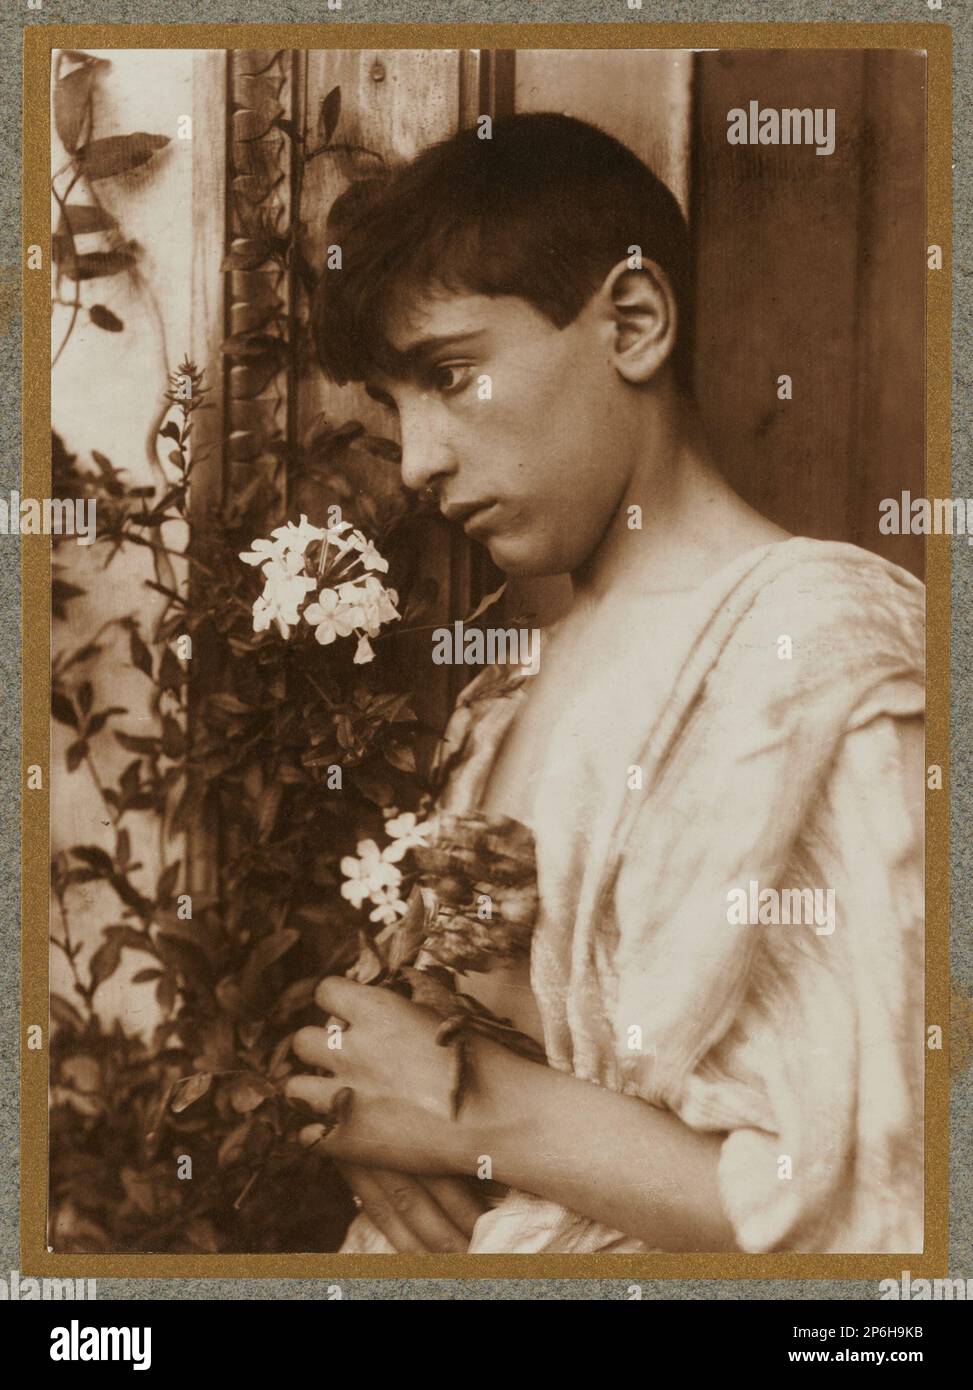 Baron Wilhelm von Gloeden, Sicilian Boy, c. 1900, silver print. Stock Photo